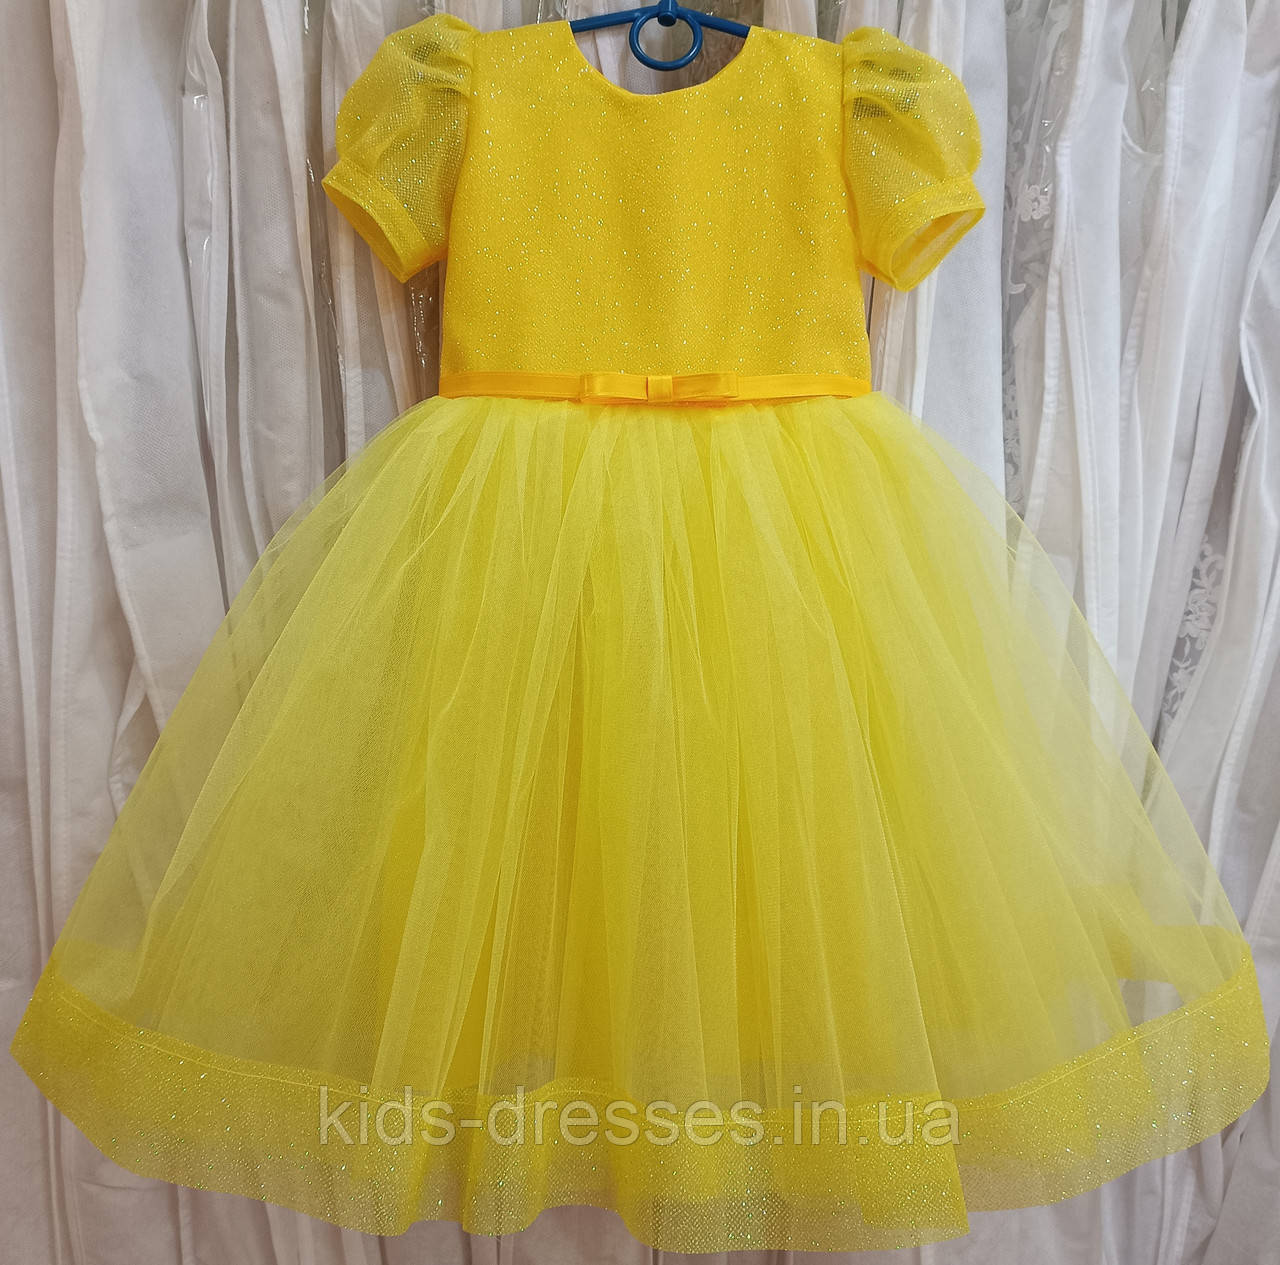 Блискуча жовта ошатна дитяча сукня з рукавчиком-ліхтариком на 3-5 років